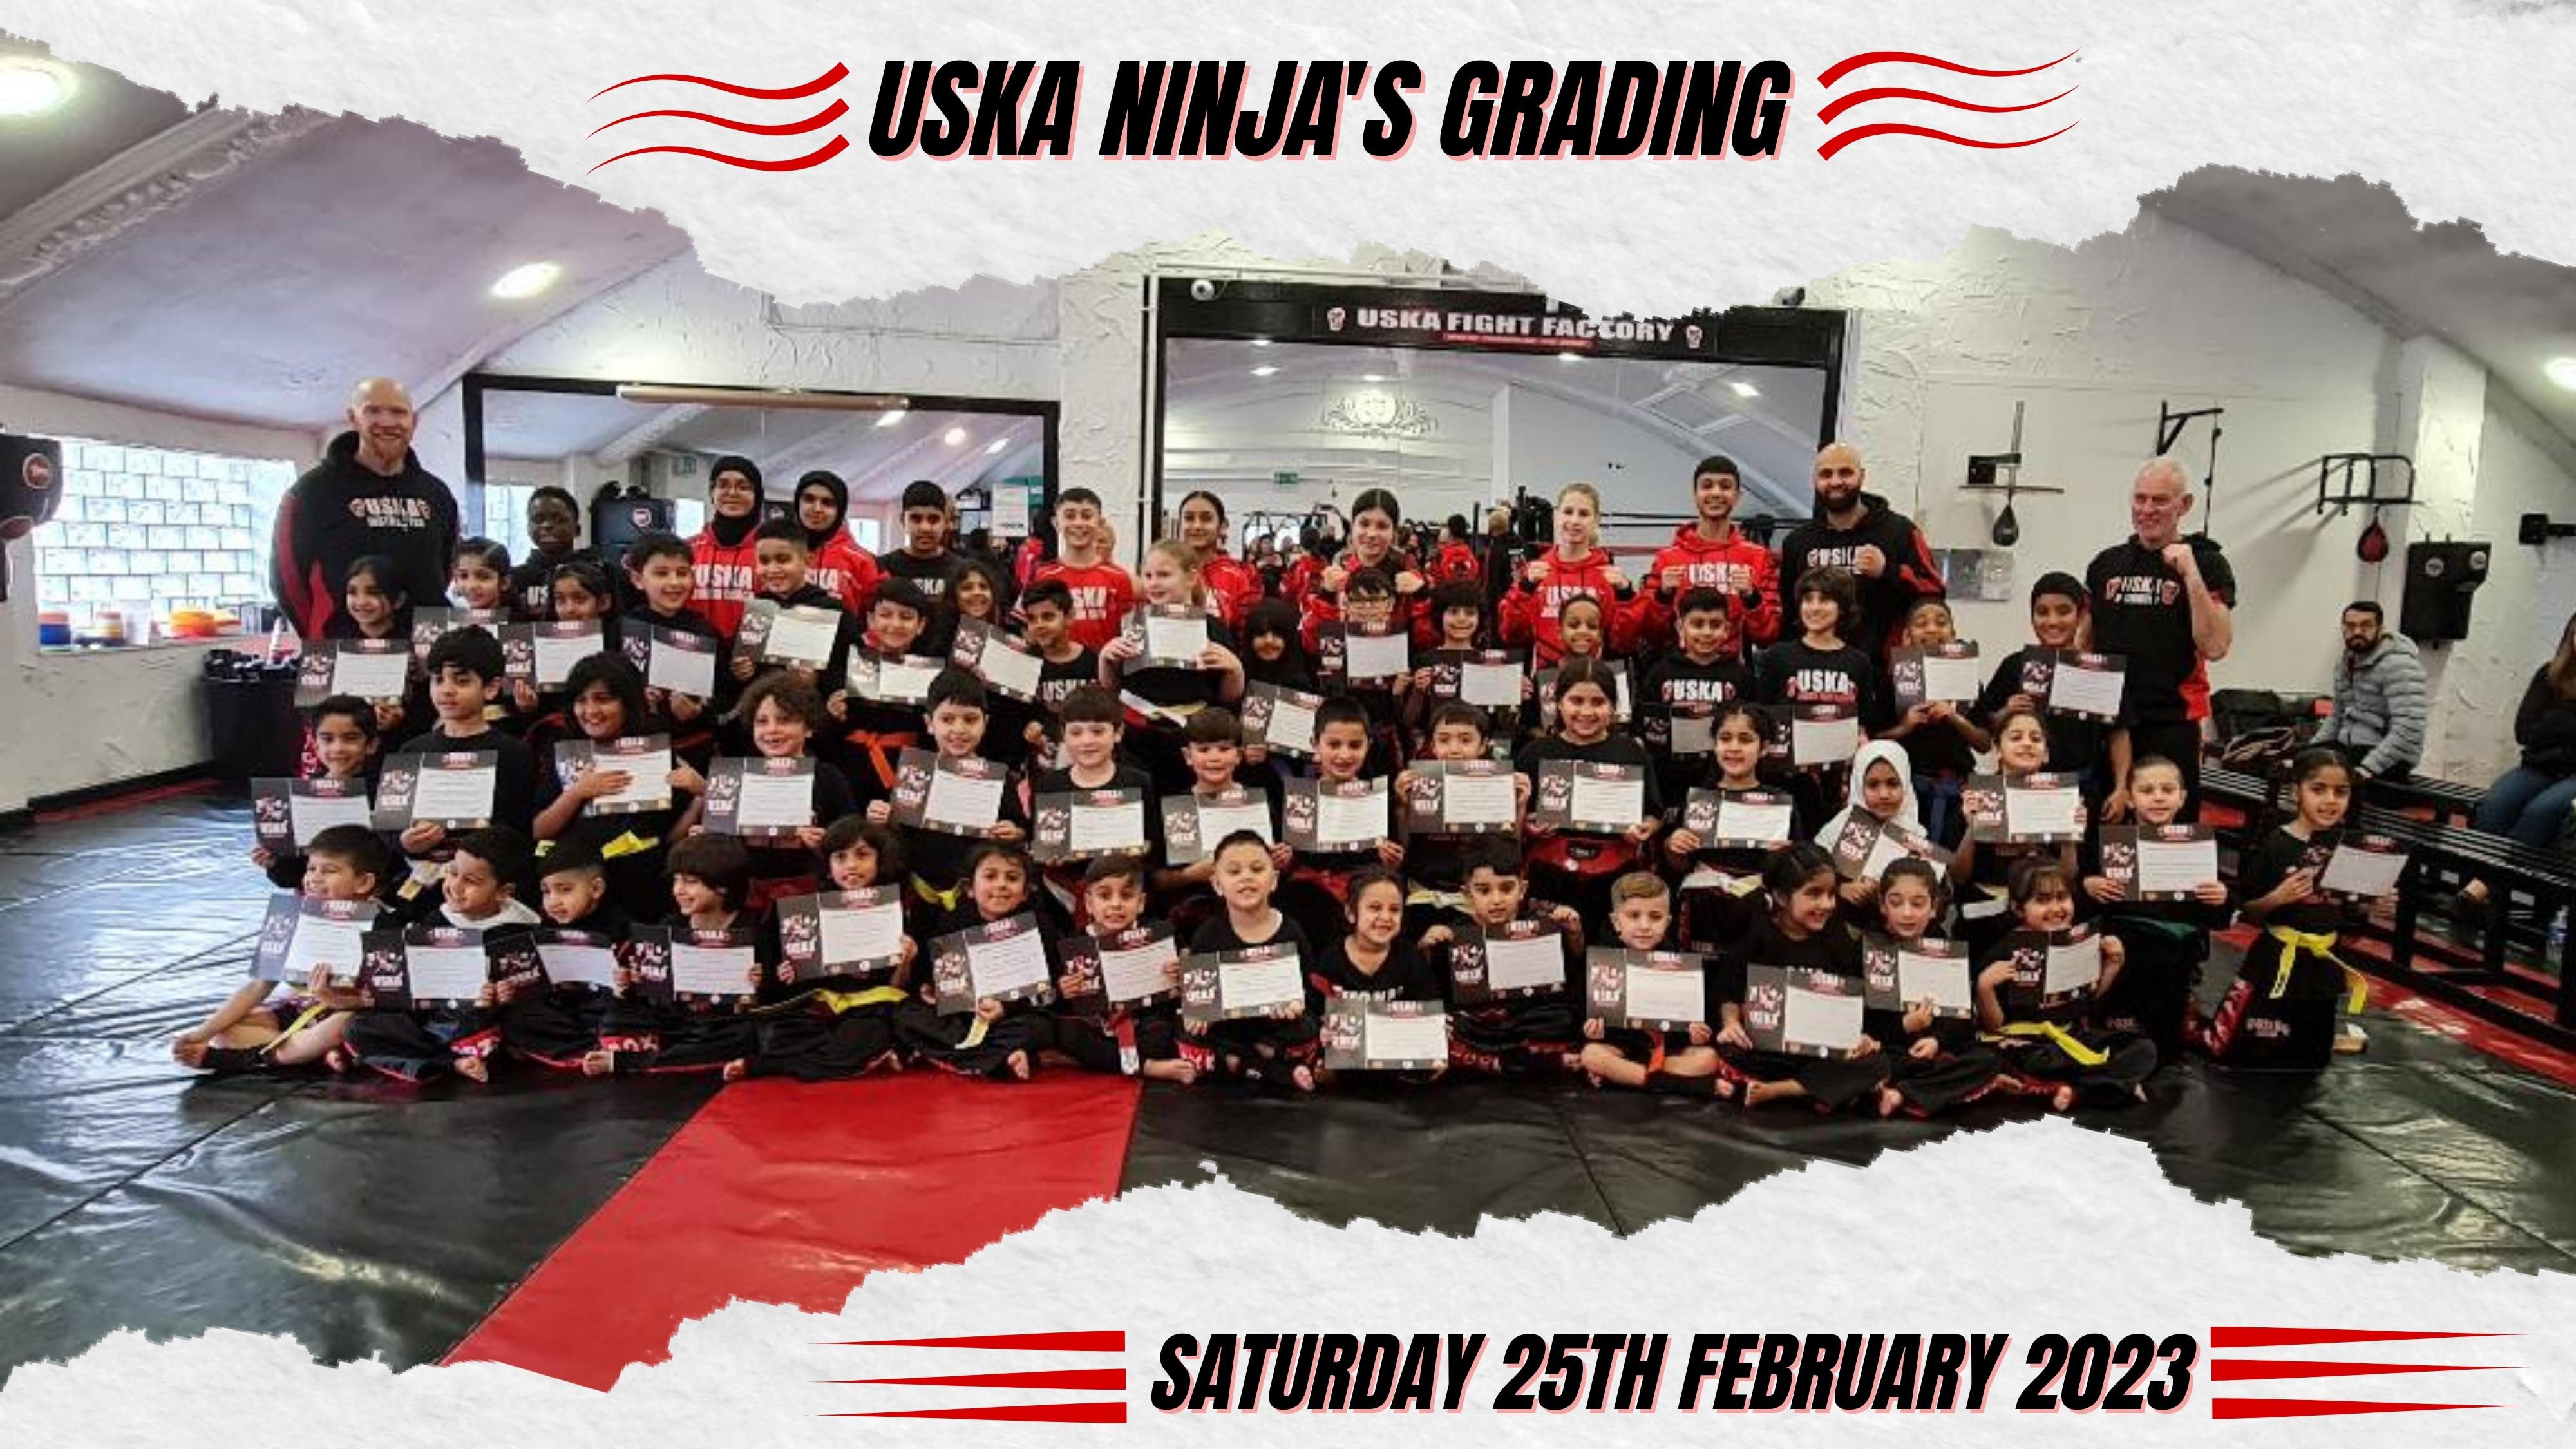 25-02-23 - USKA Ninja's are amazing on their latest Grading!